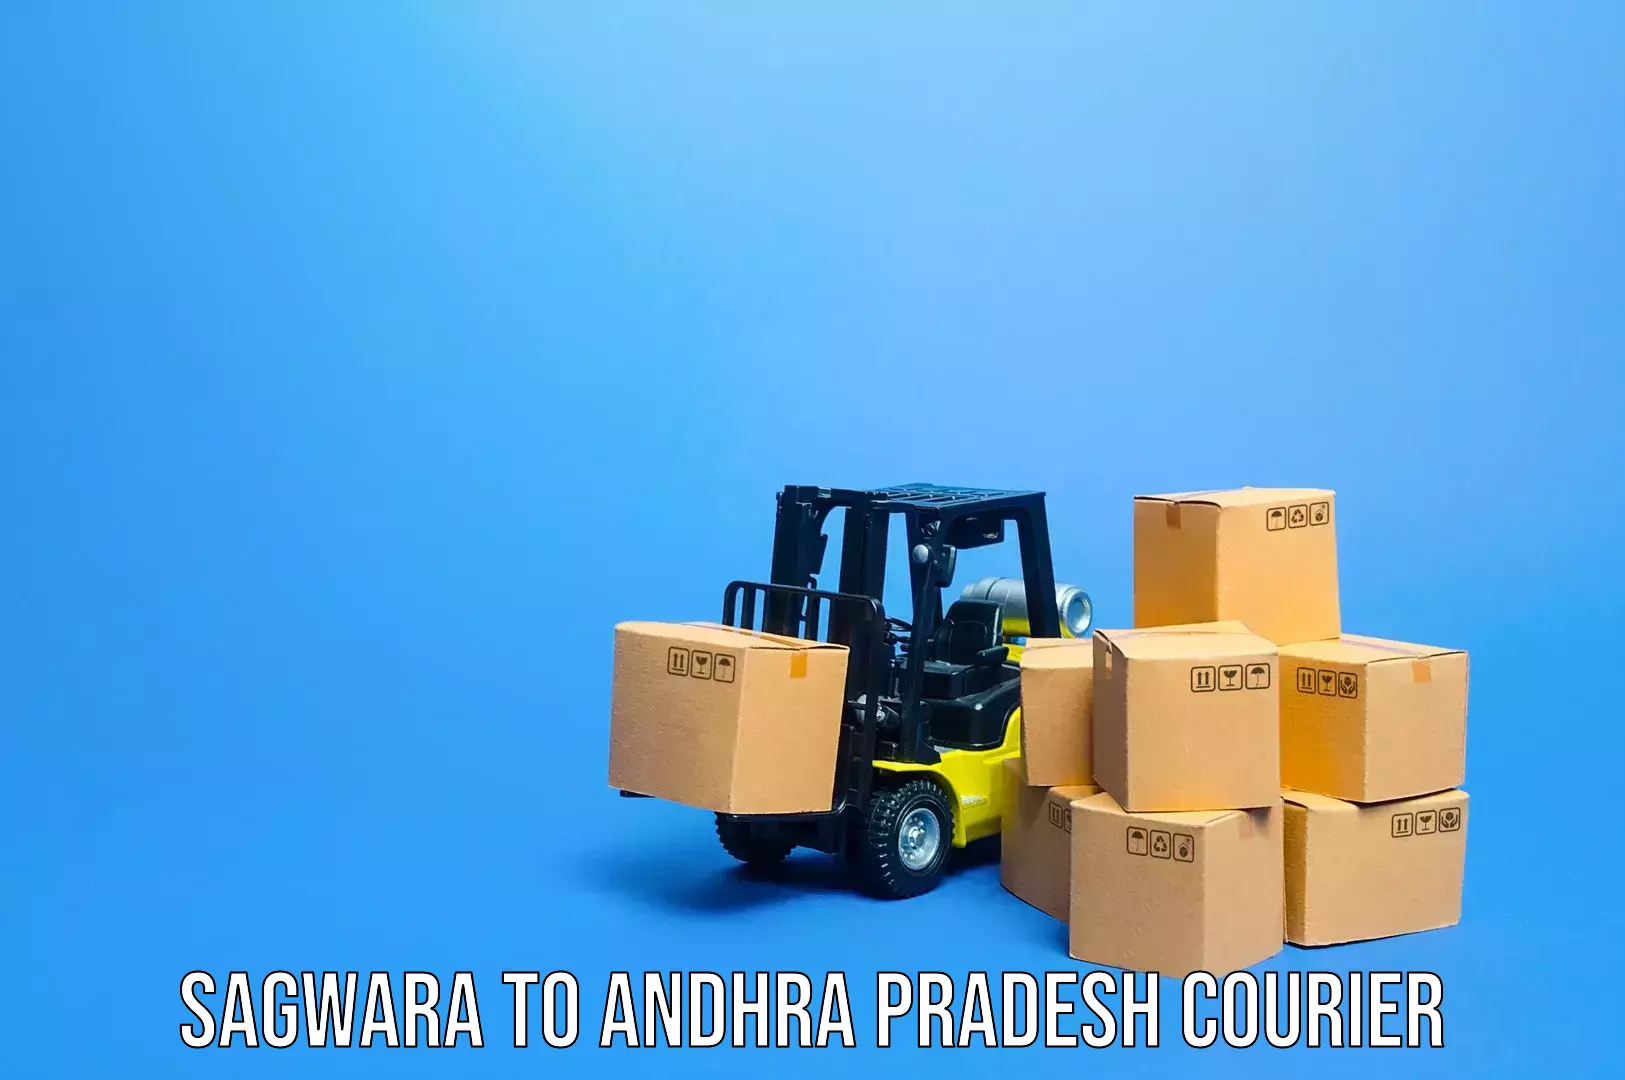 Emergency baggage service Sagwara to Andhra Pradesh